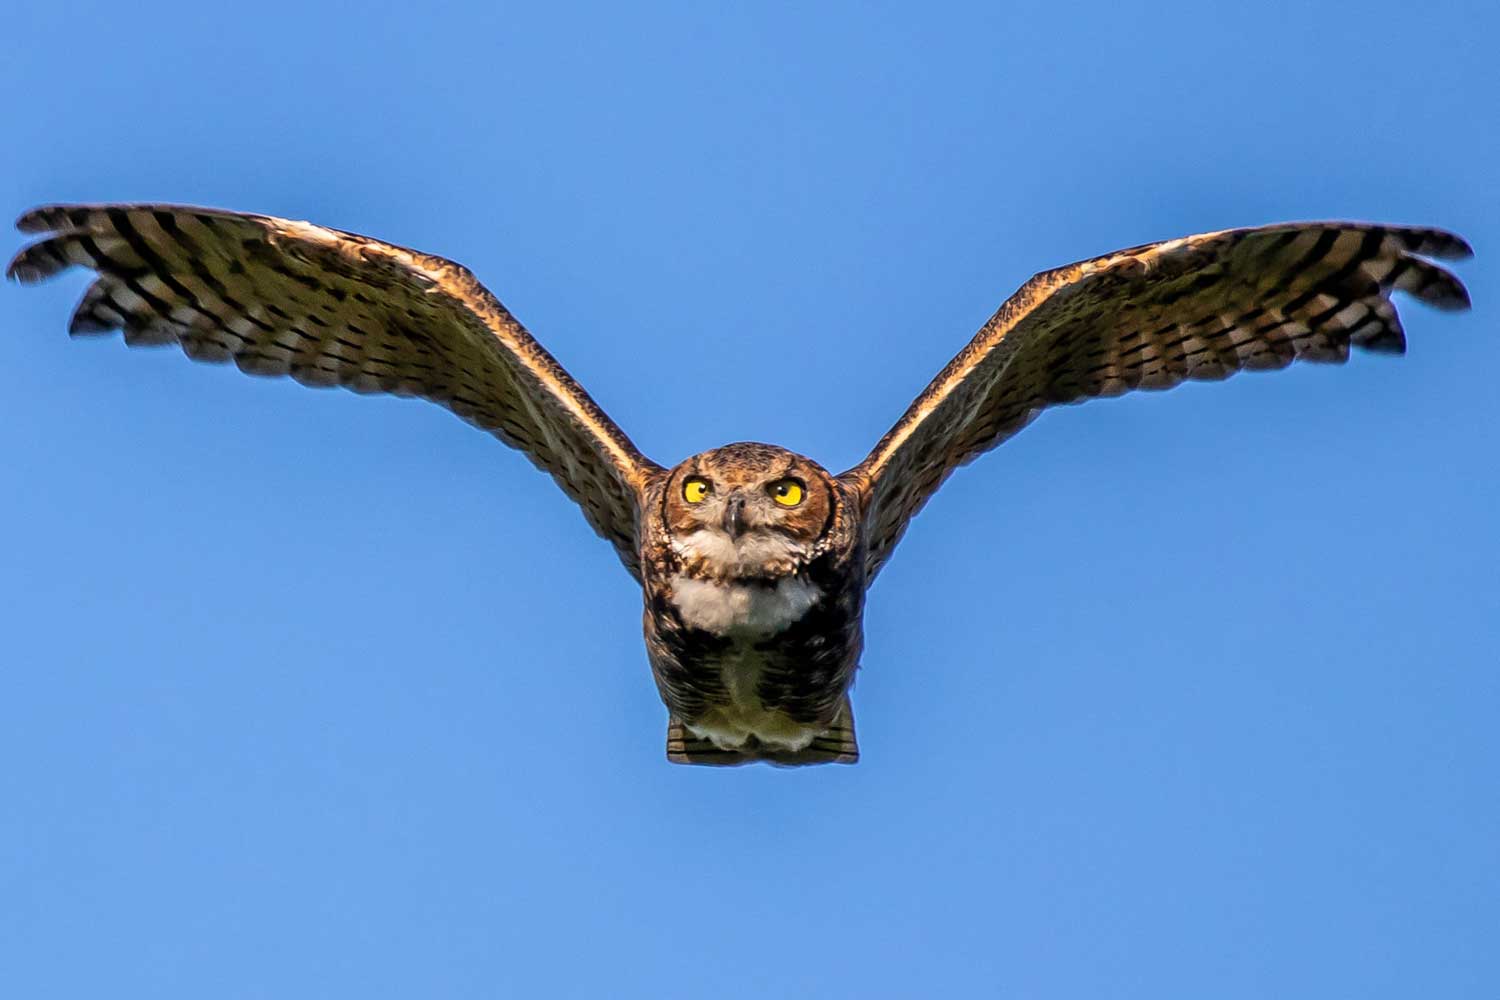 Great horned owl in flight.